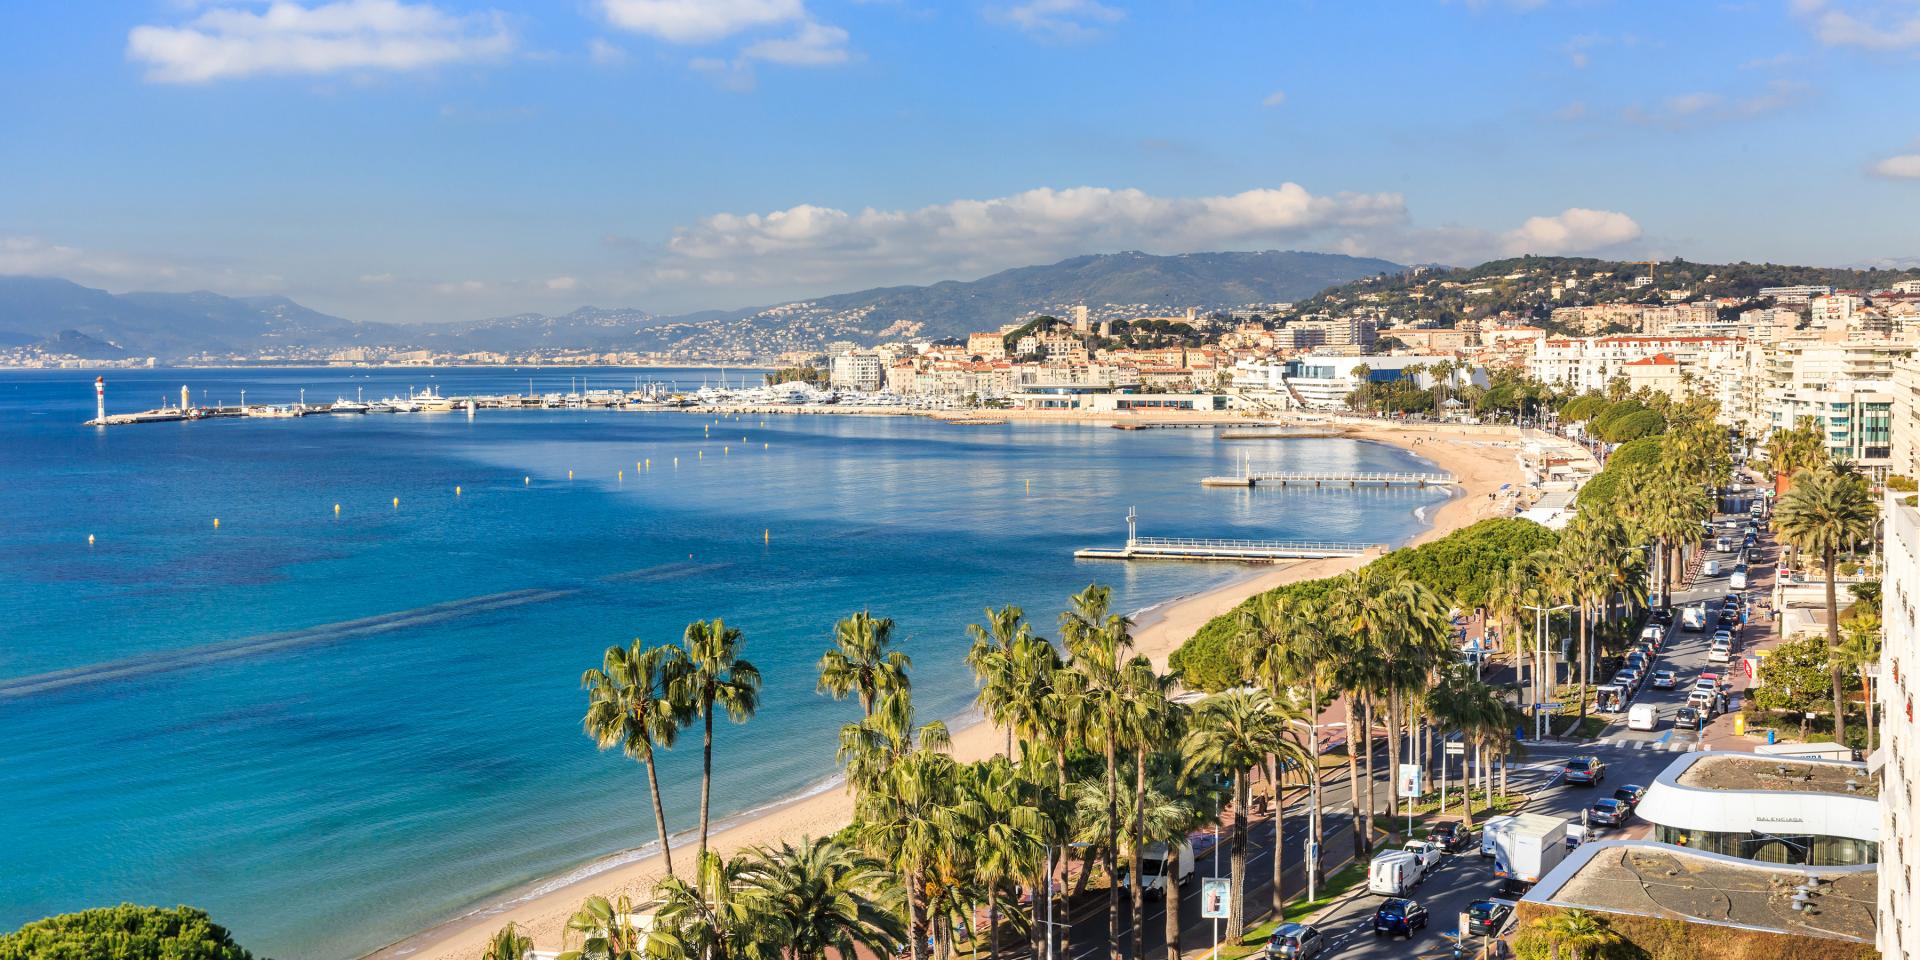 Boulevard de la Croisette - 10 Gorgeous Attractions in Cannes